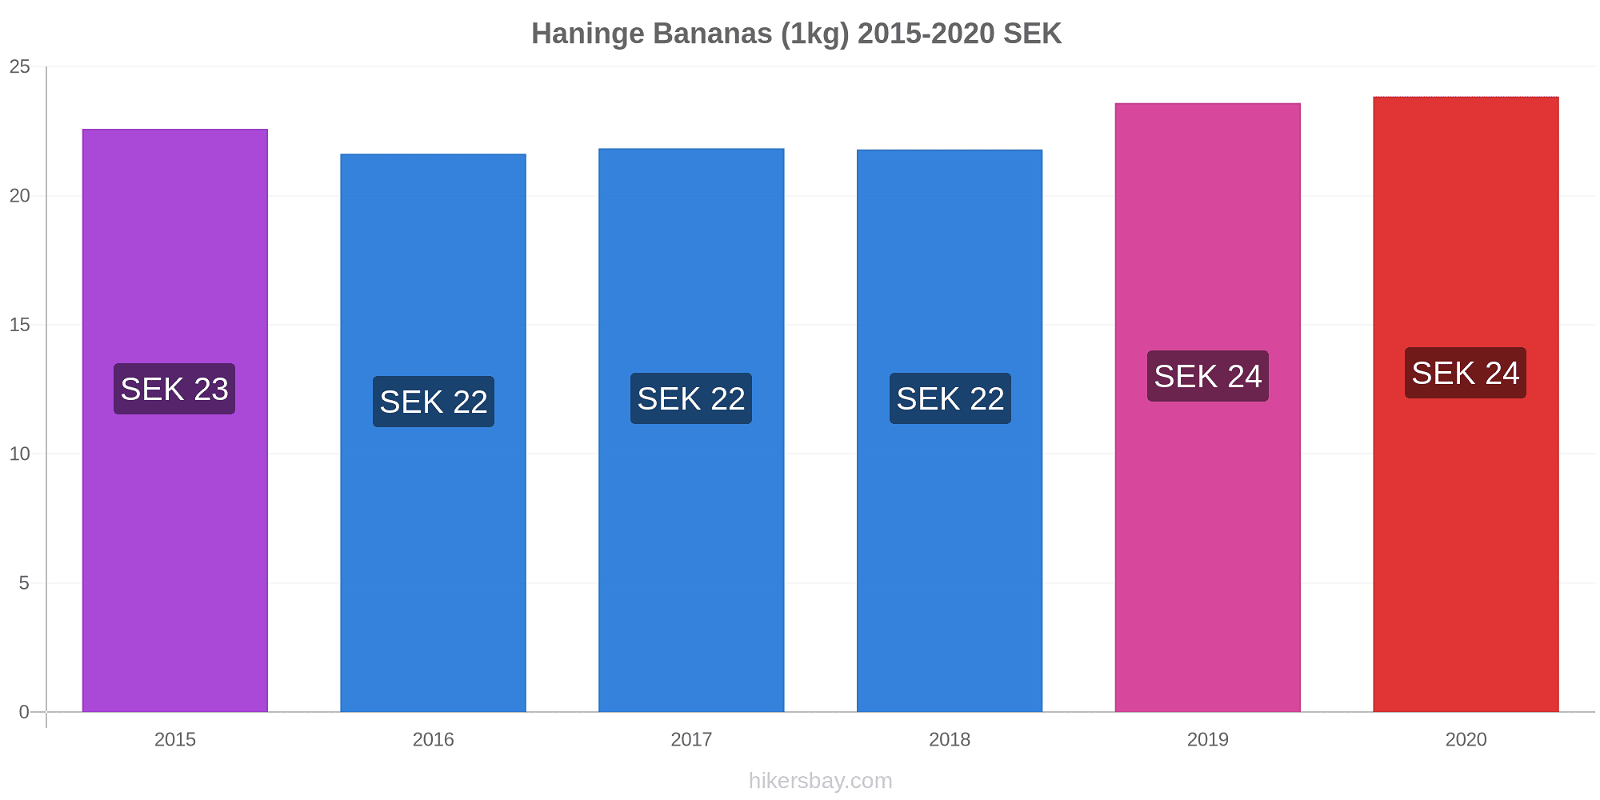 Haninge variação de preço Banana (1kg) hikersbay.com